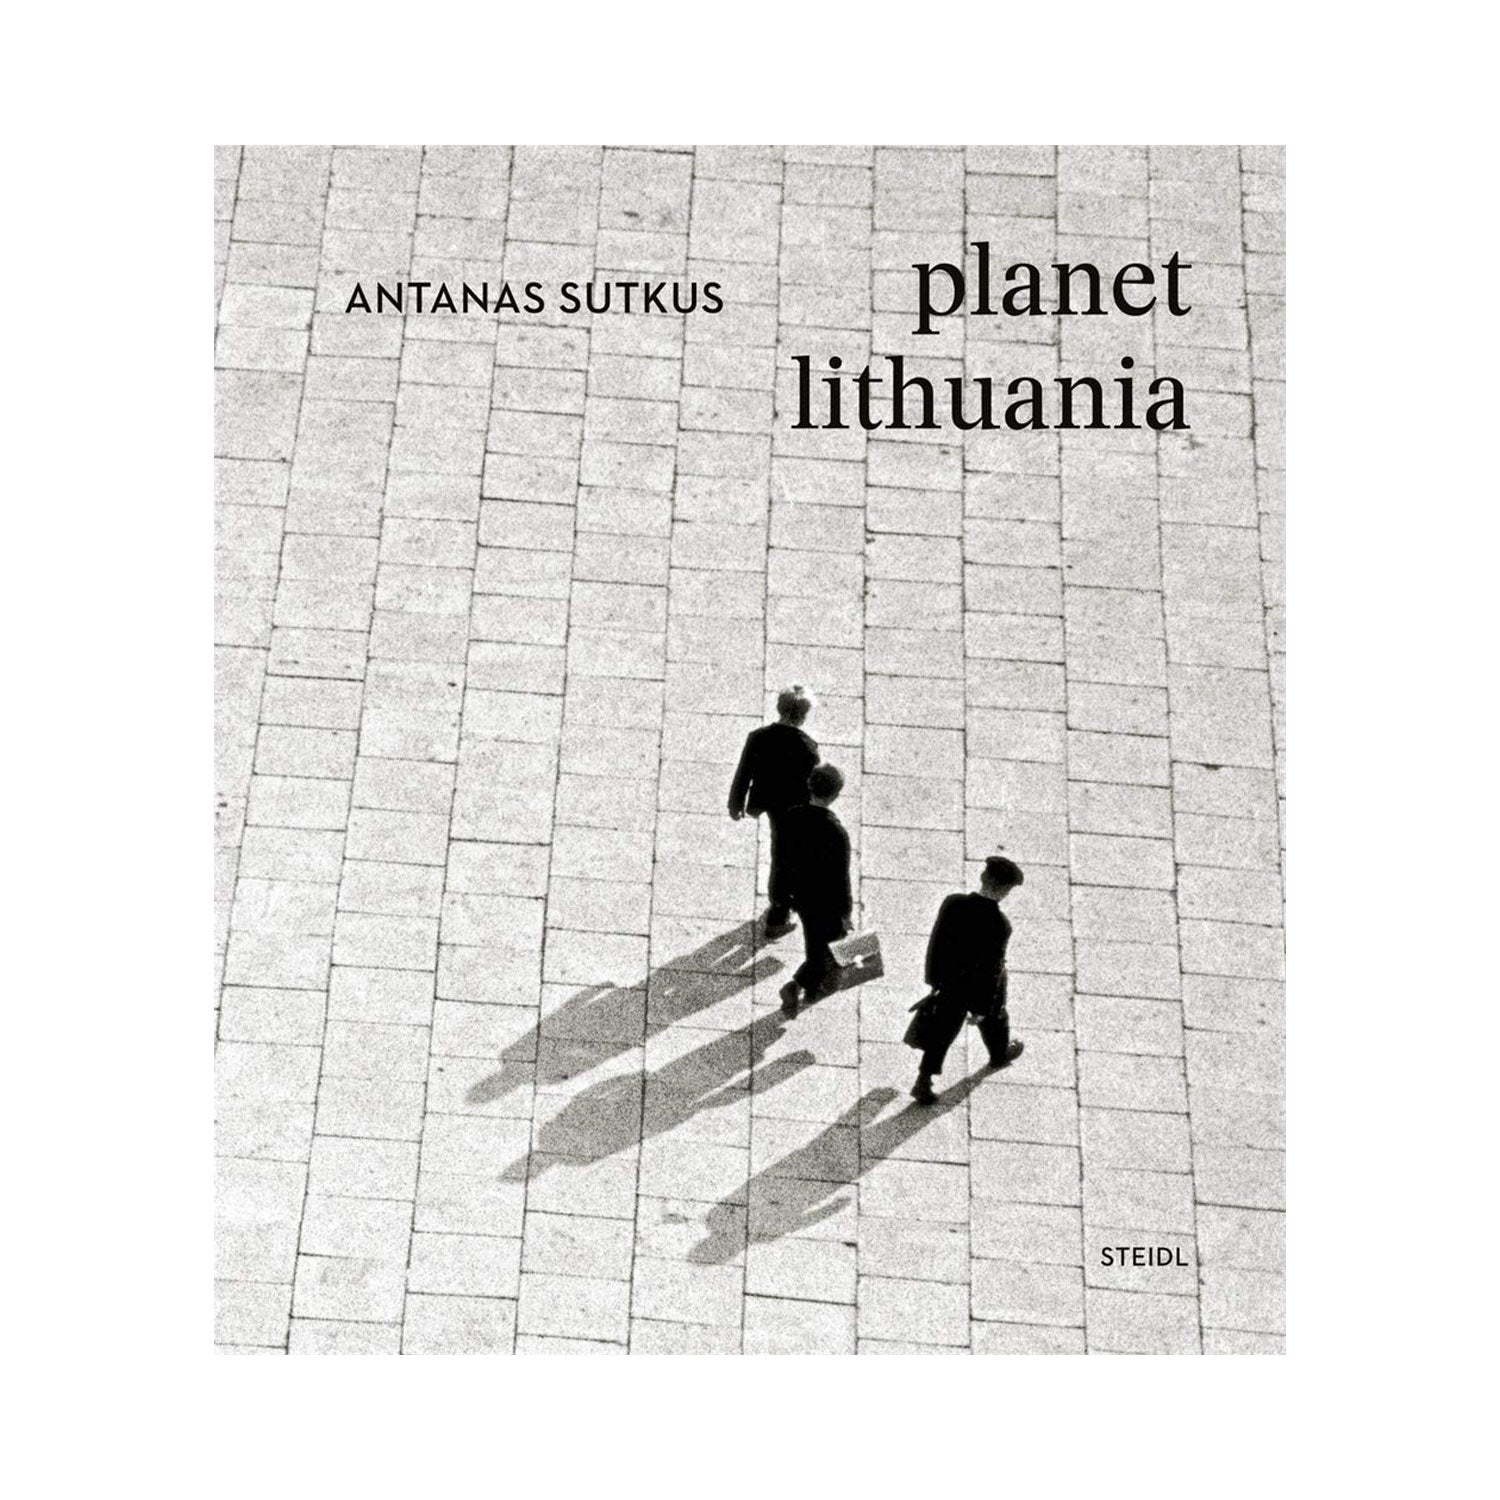 Planet Lithuania by Antanas Sutkus Photo Museum Ireland